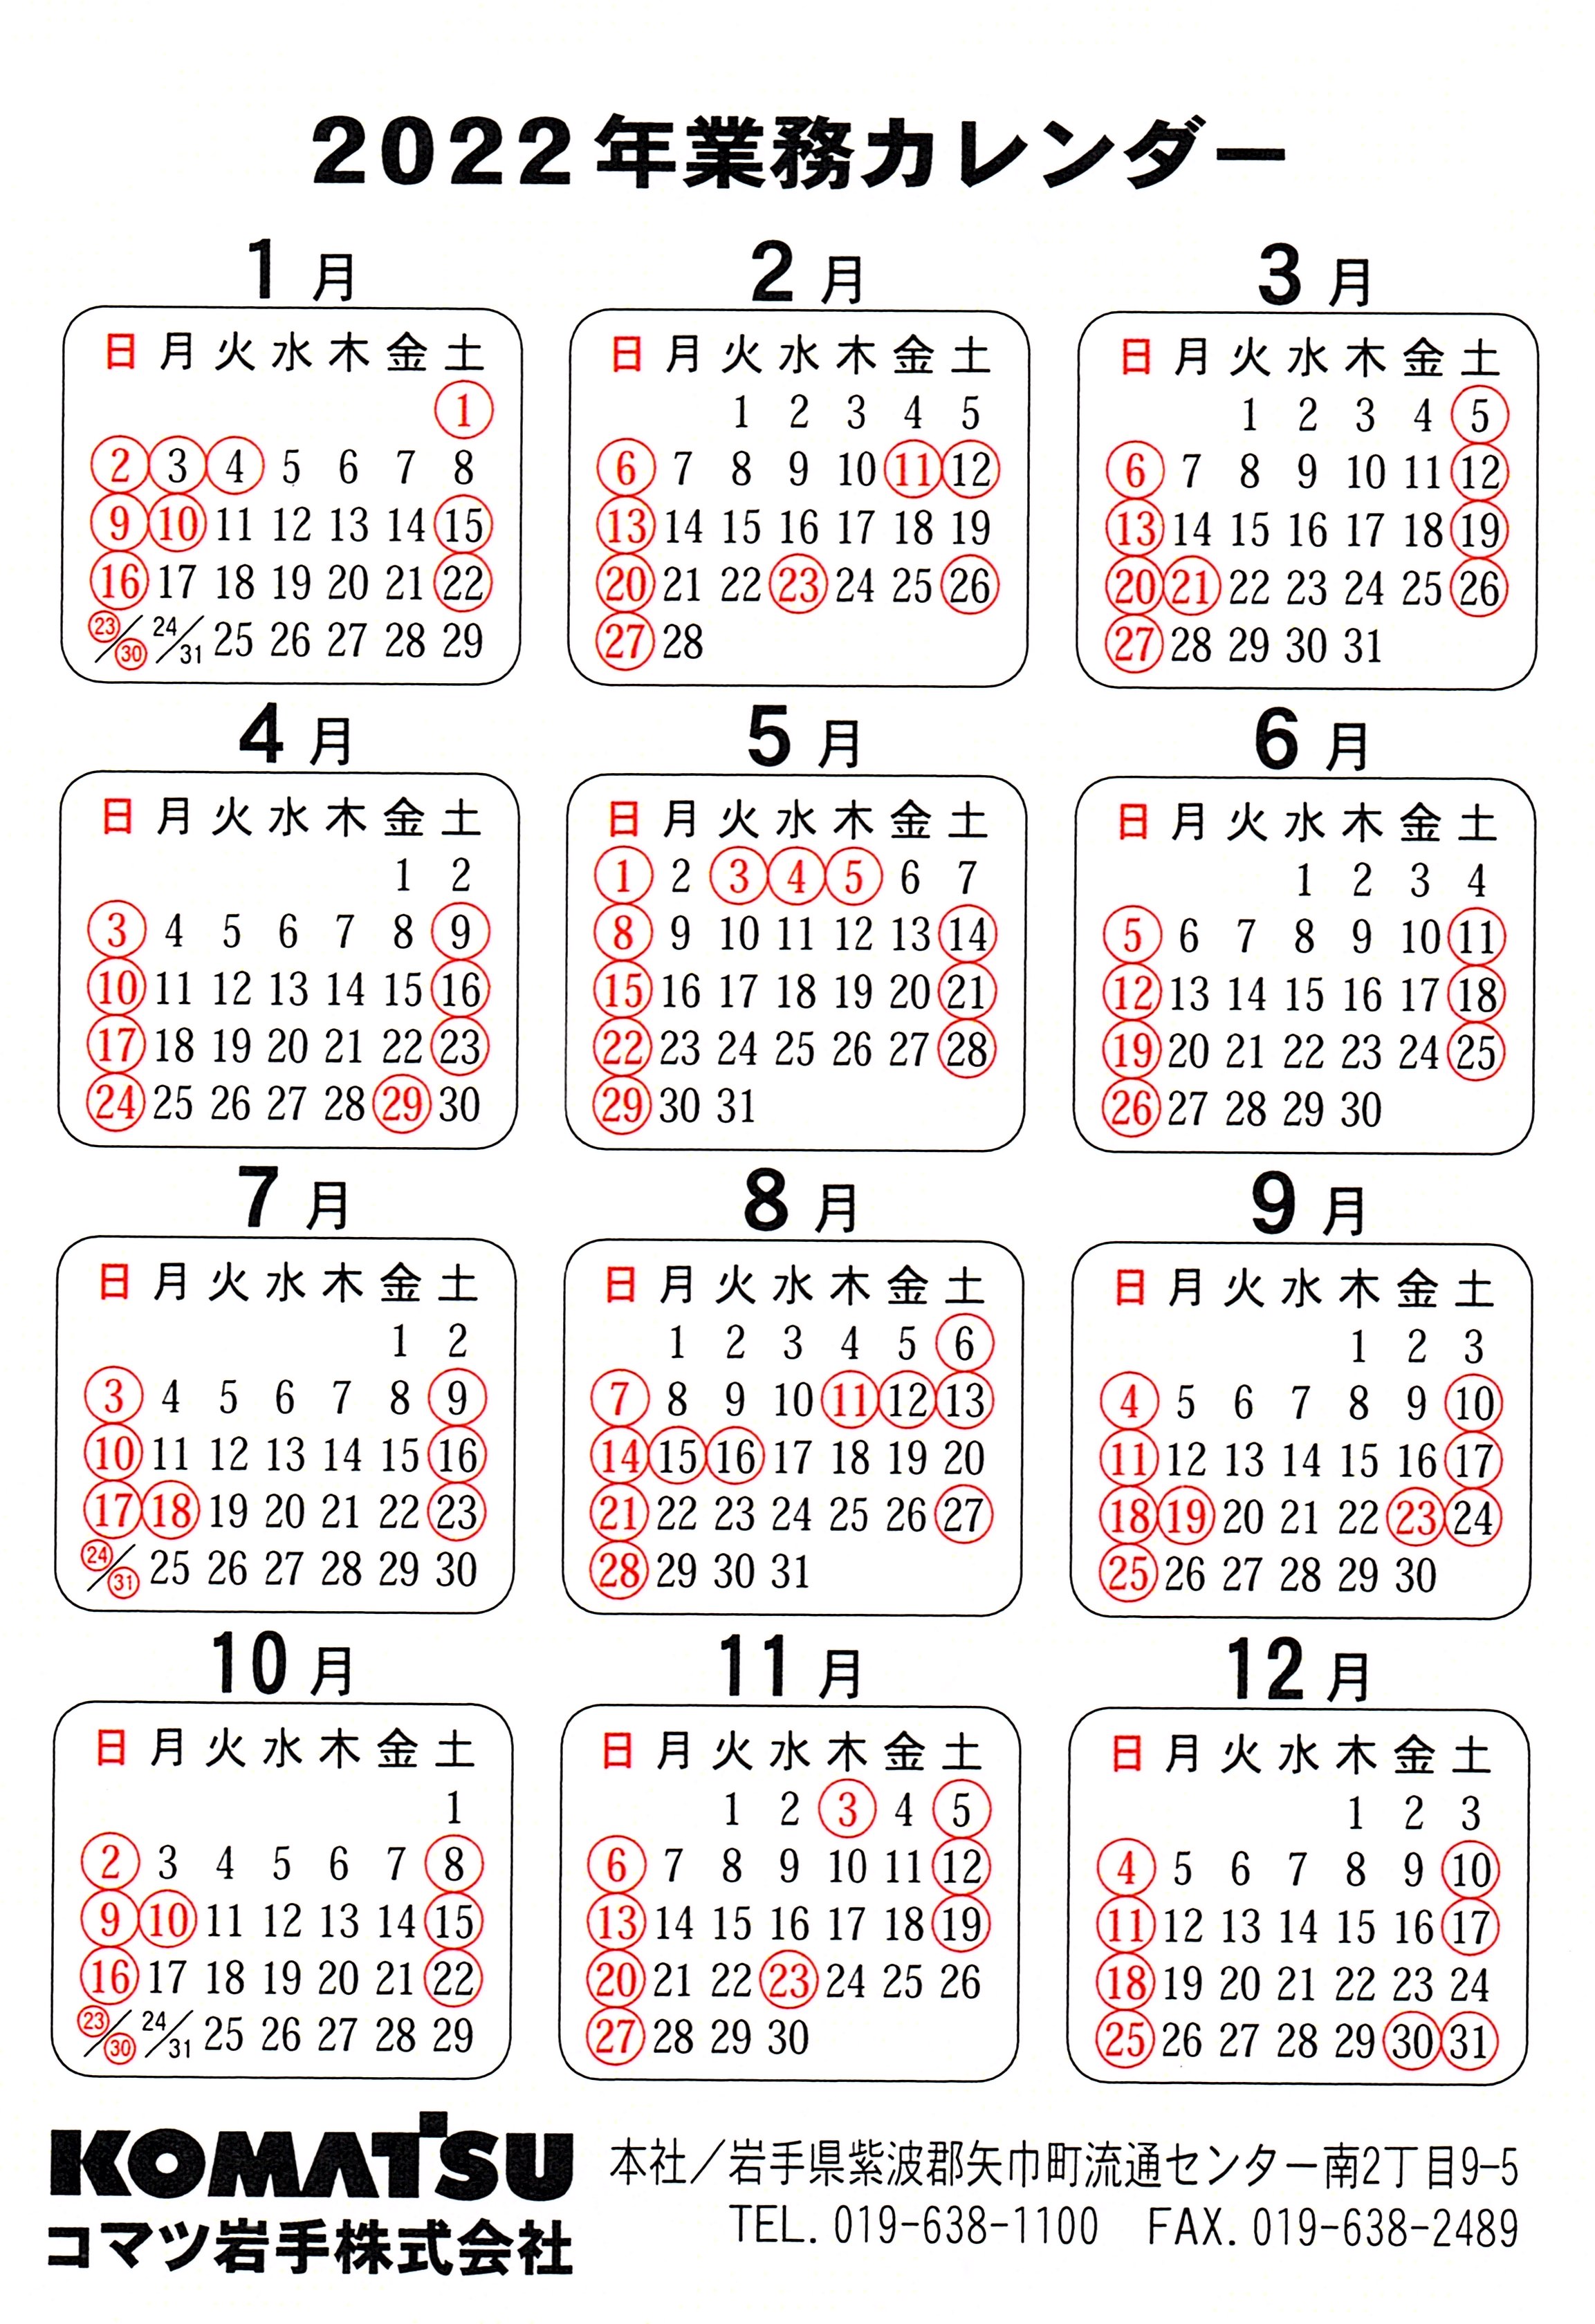 22年 業務カレンダーのお知らせ コマツ岩手